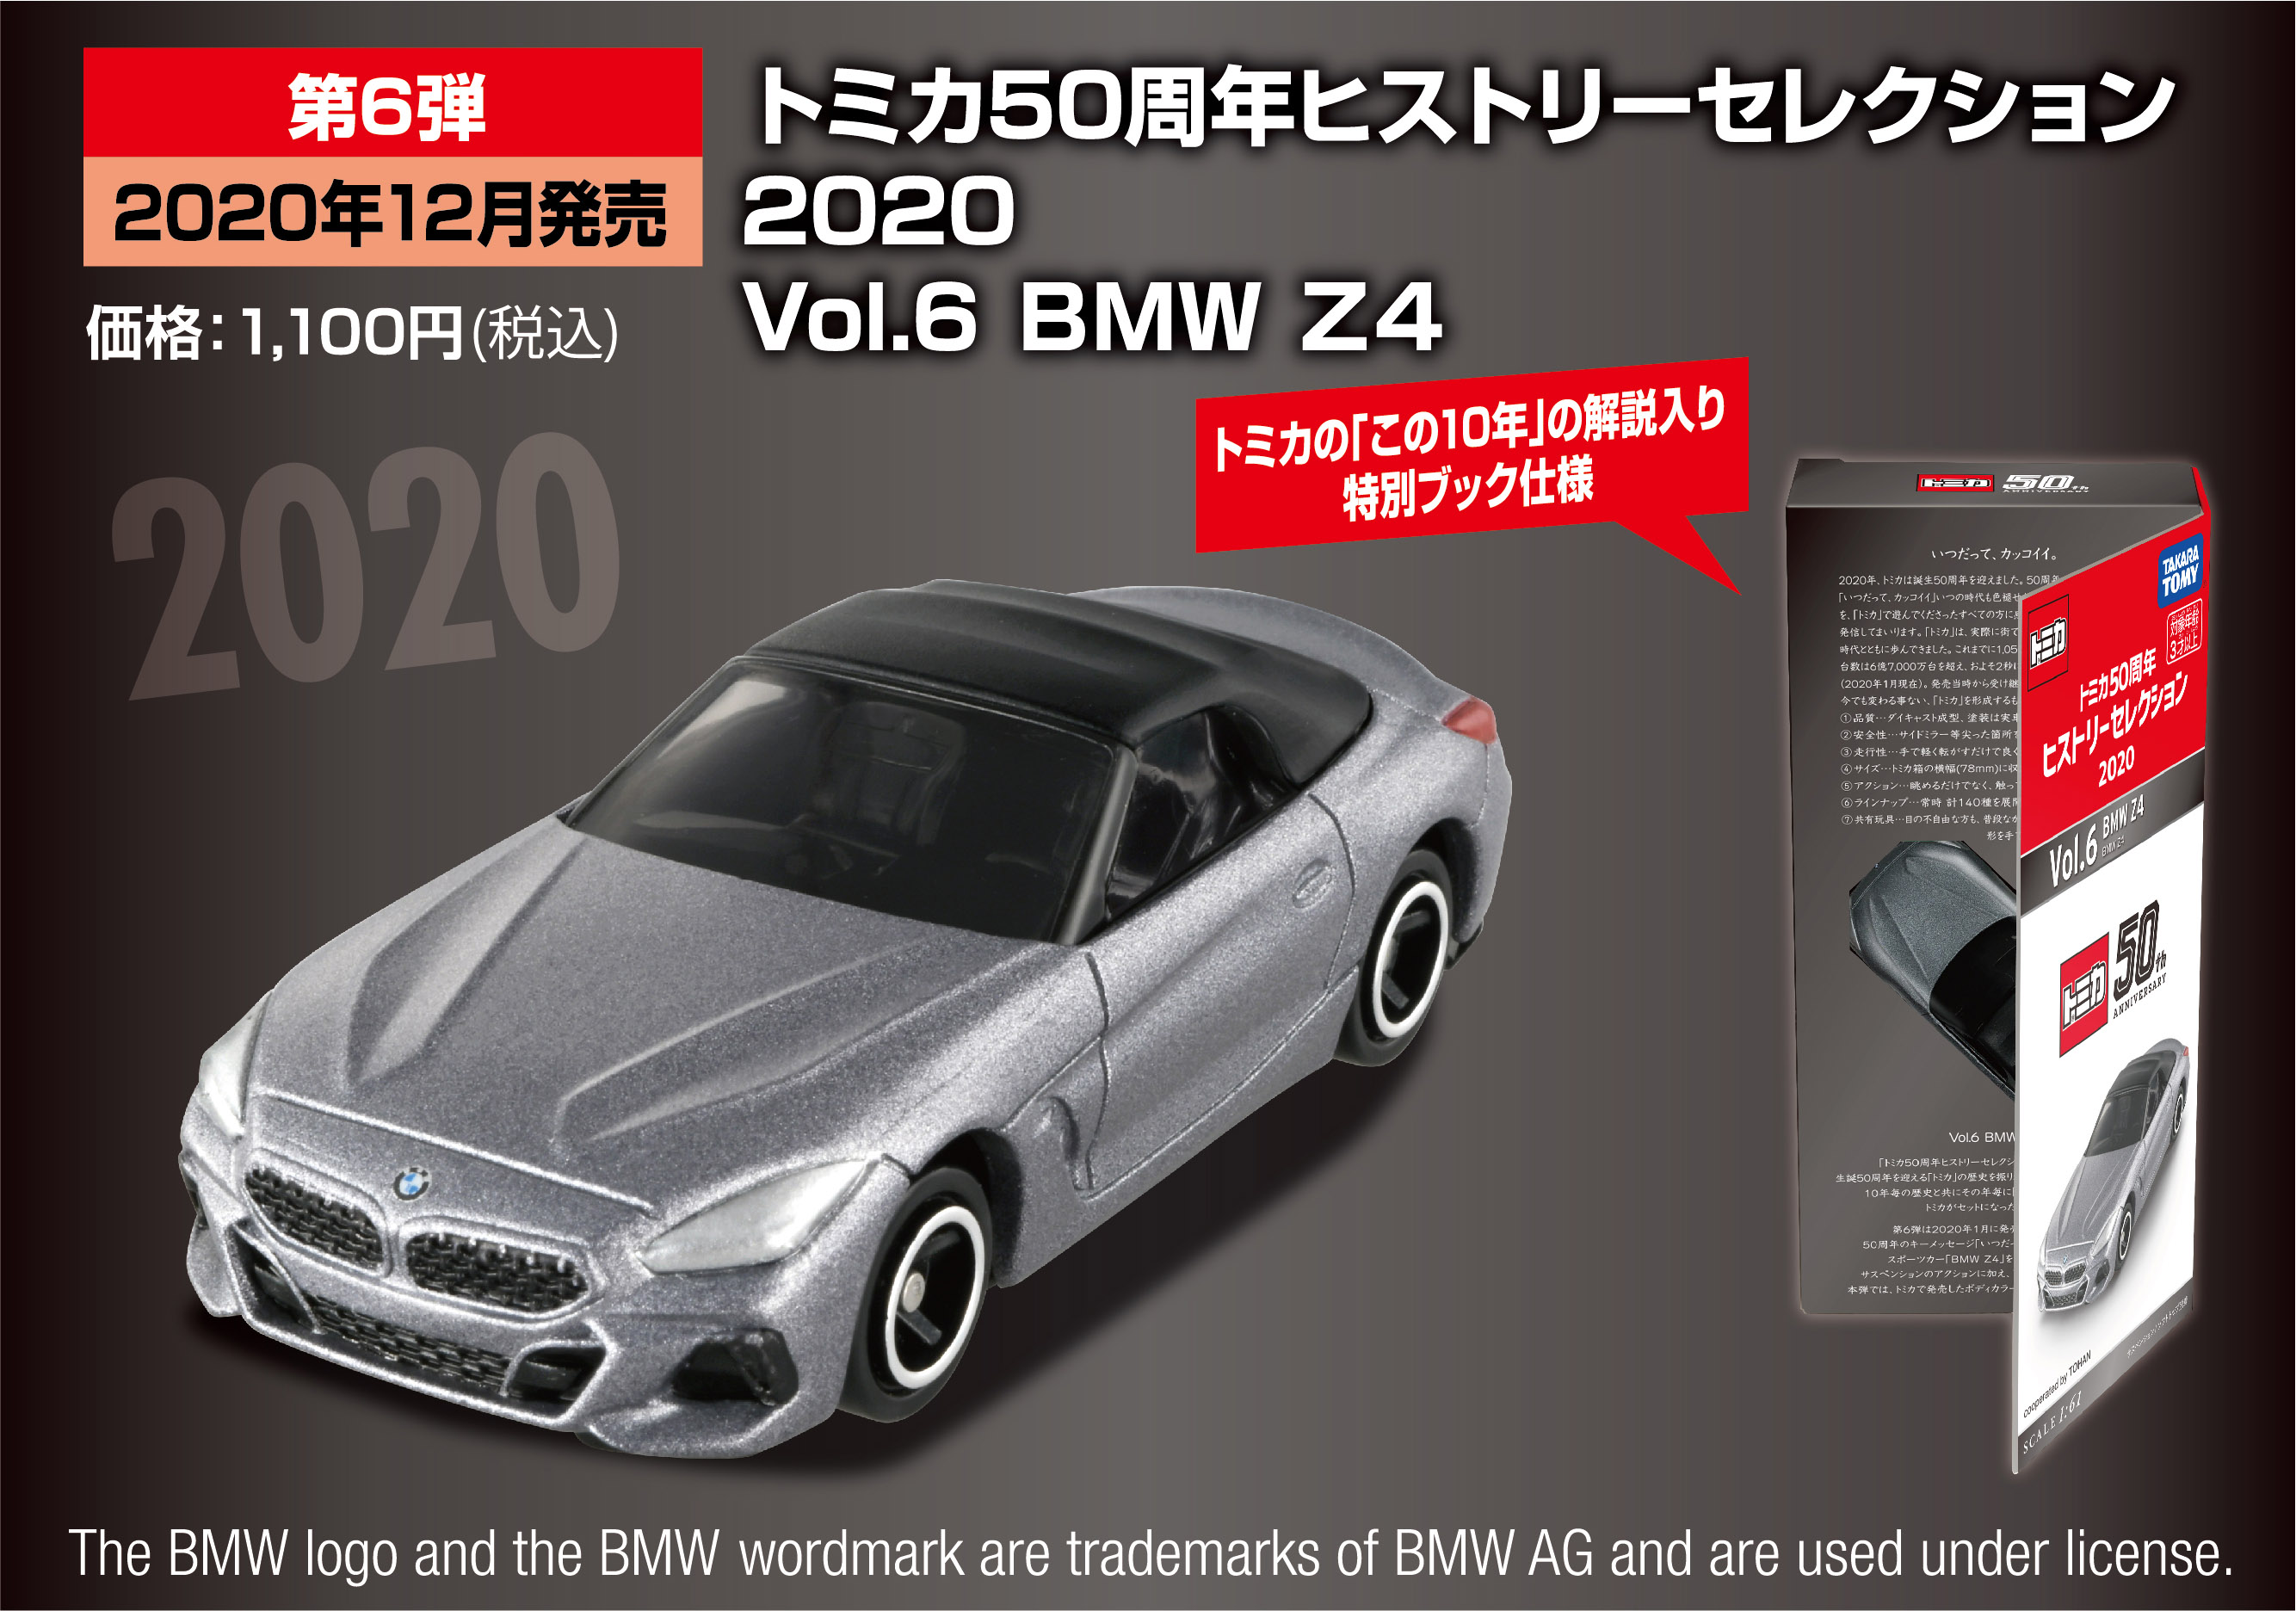 第6弾 12月発売予定 2 2020
Vol.6 BMW Z4